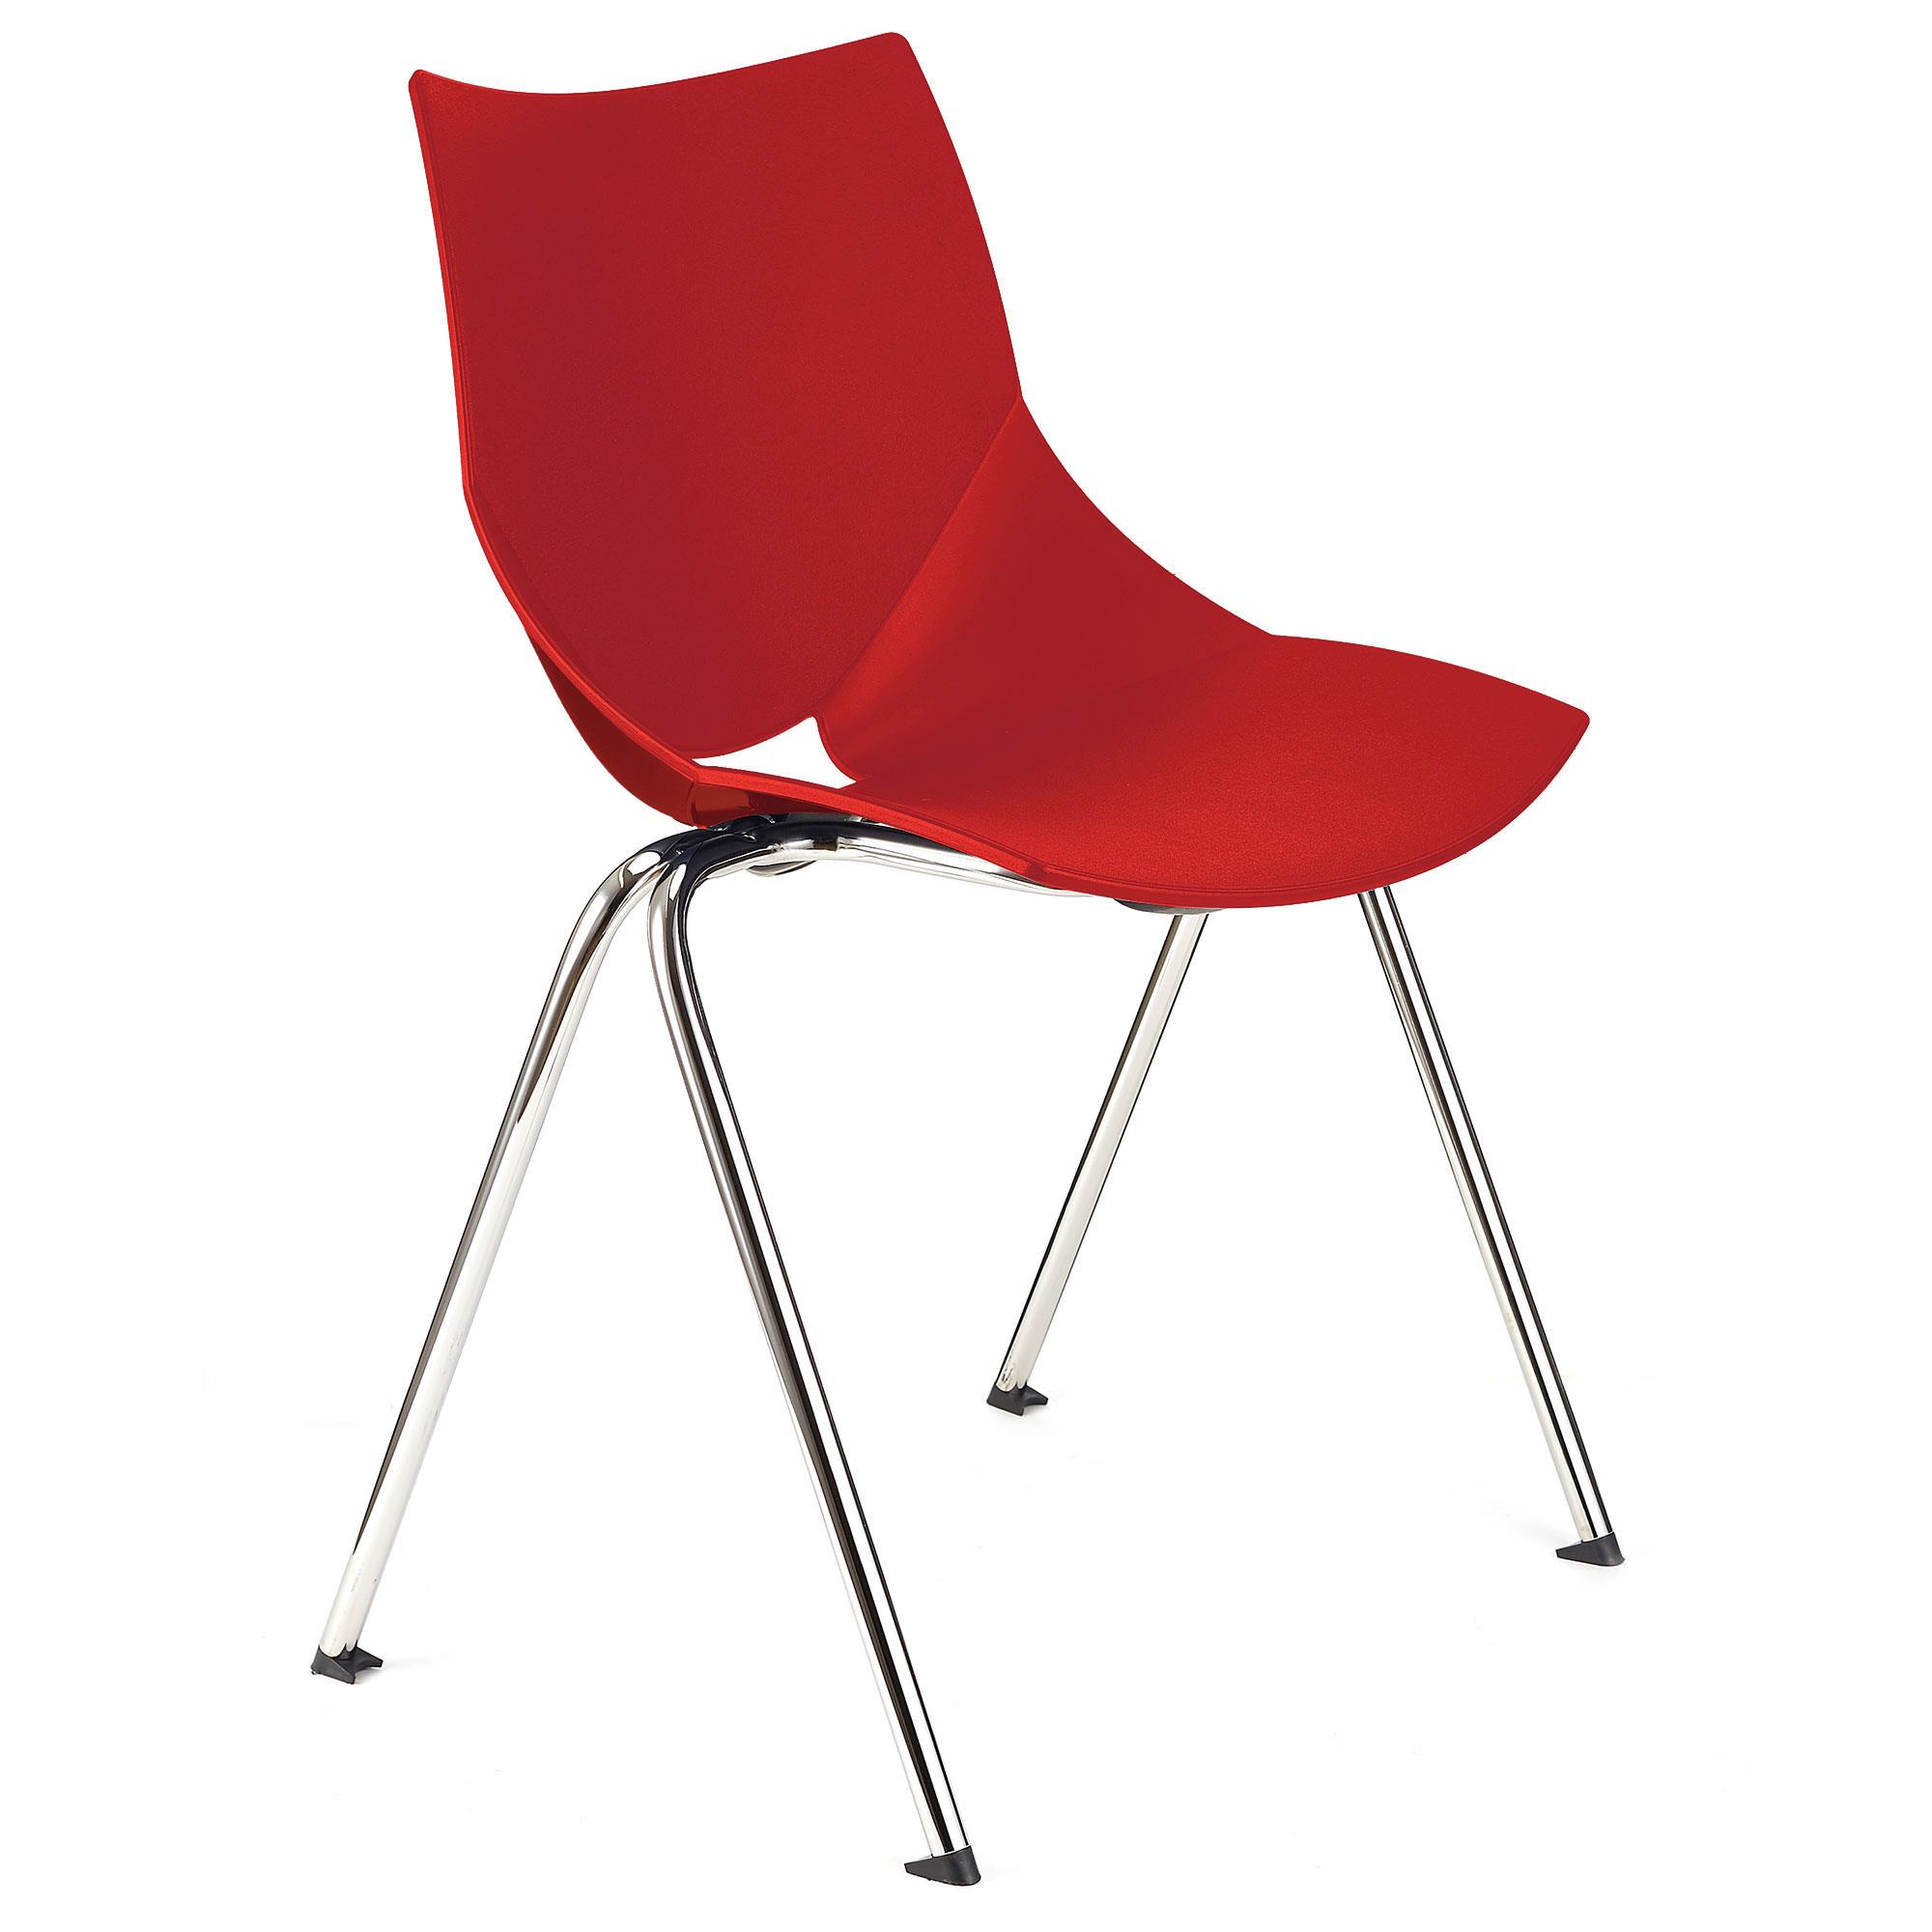 Konferenzstuhl AMIR, bequem und praktisch, stapelbar, Farbe Rot